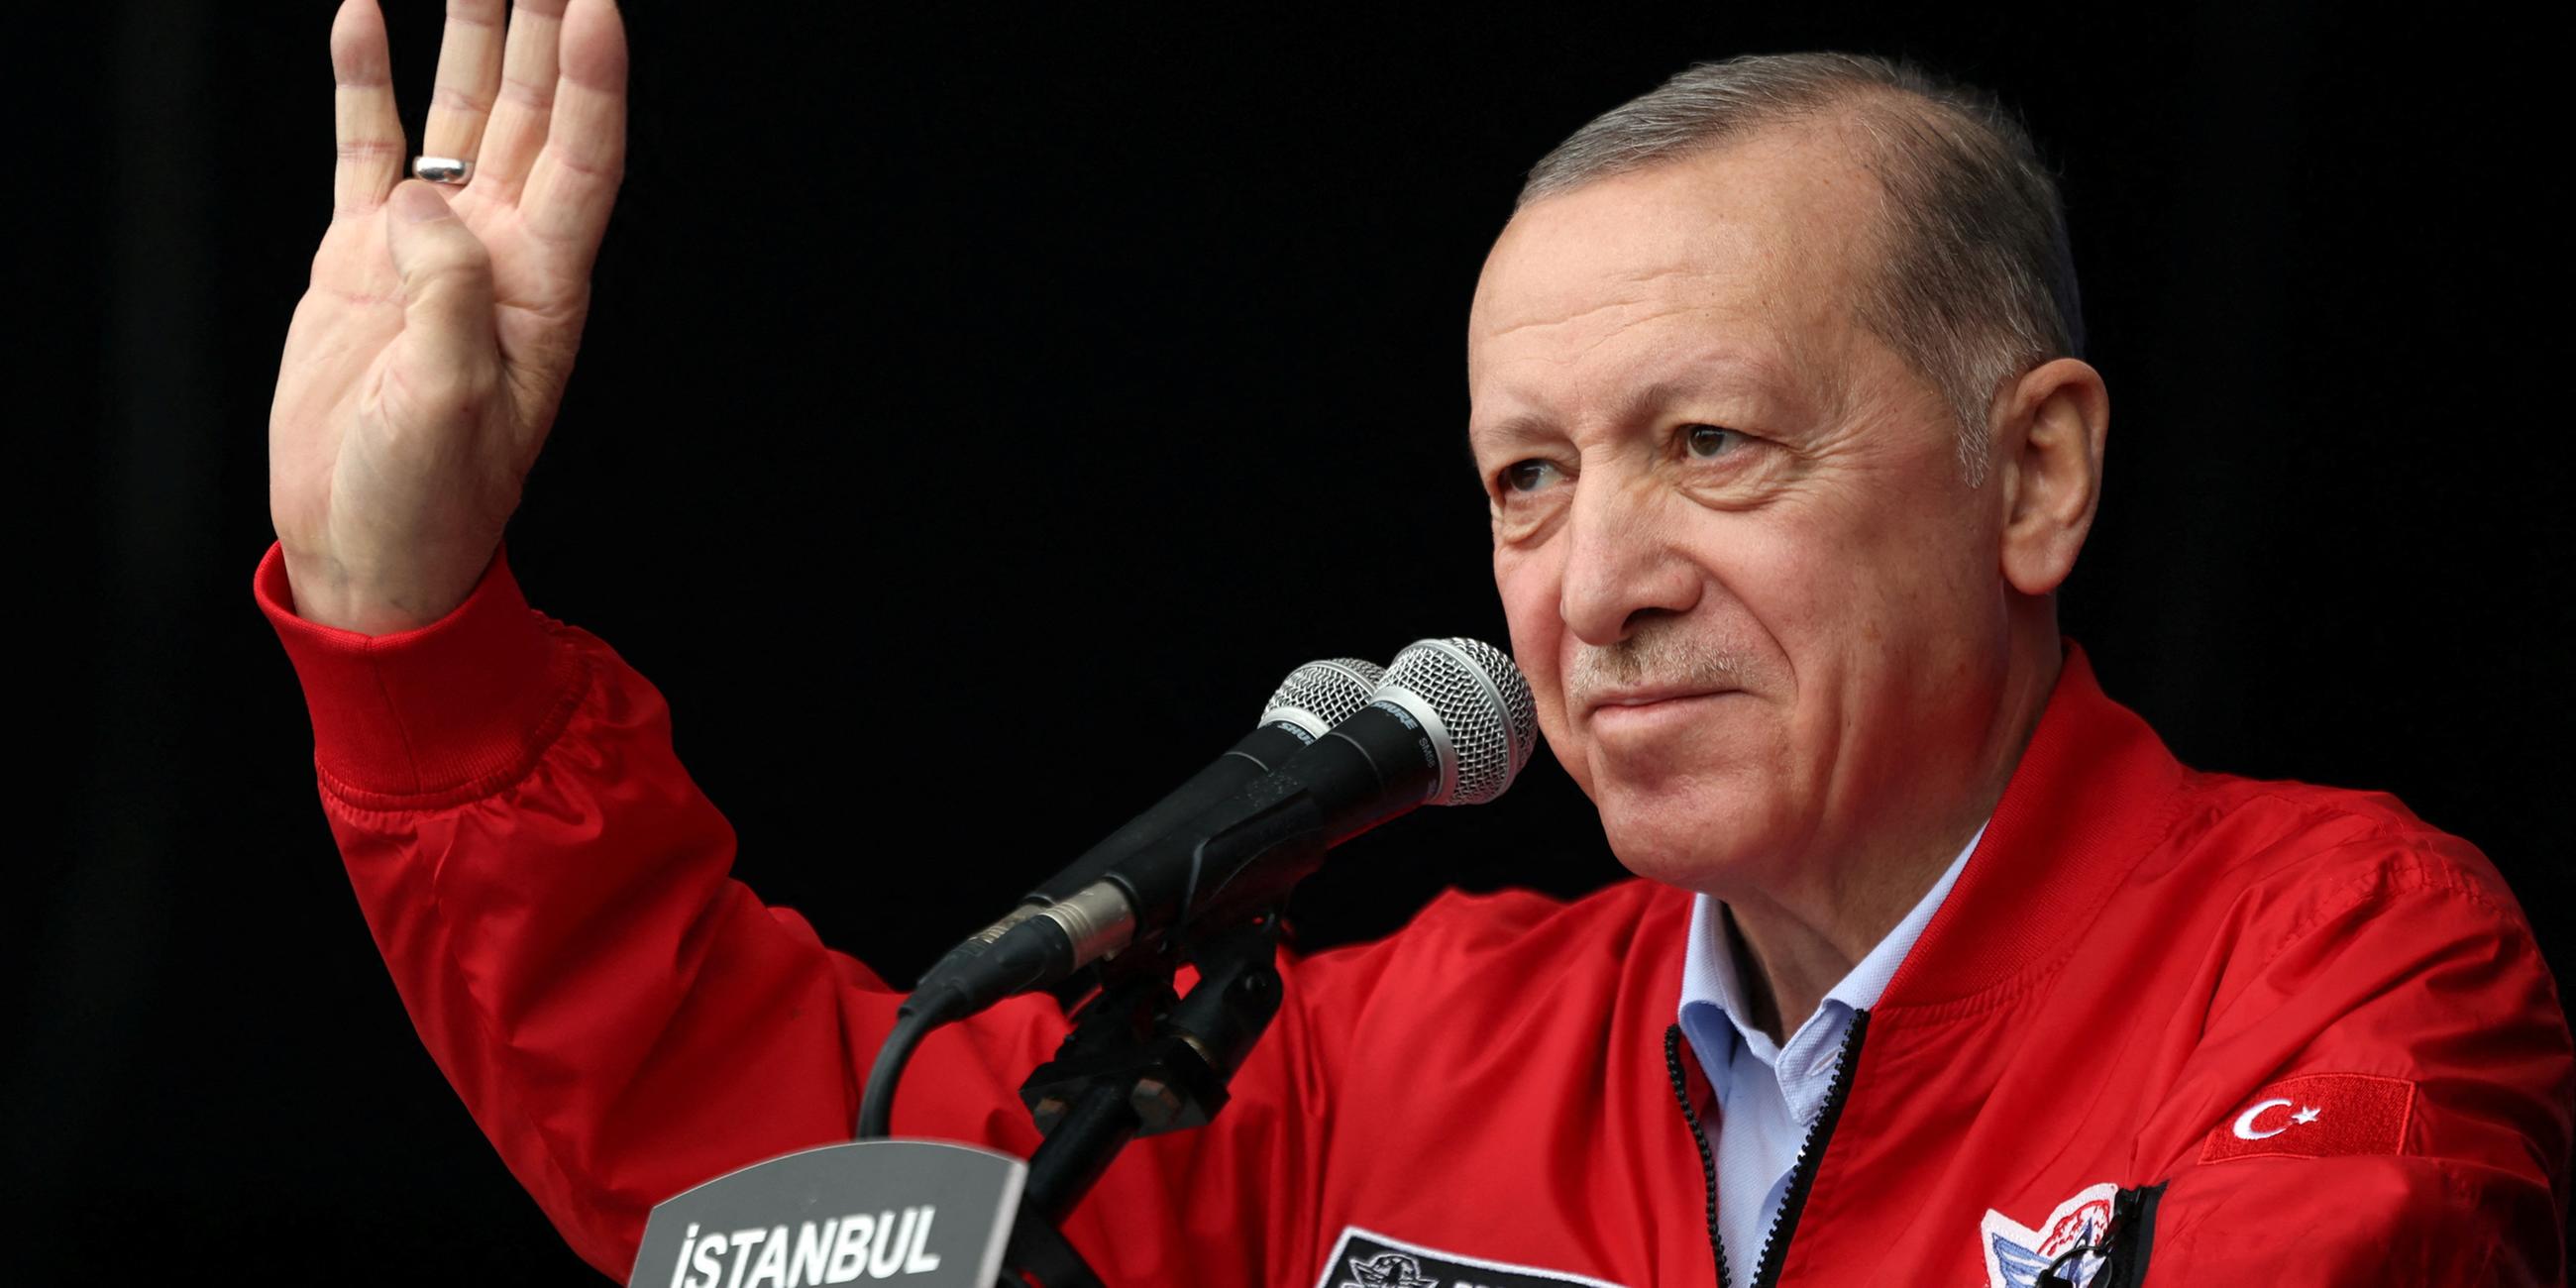 Präsident Recep Tayyip Erdogan mit roter Windjacke am Mikrofon.